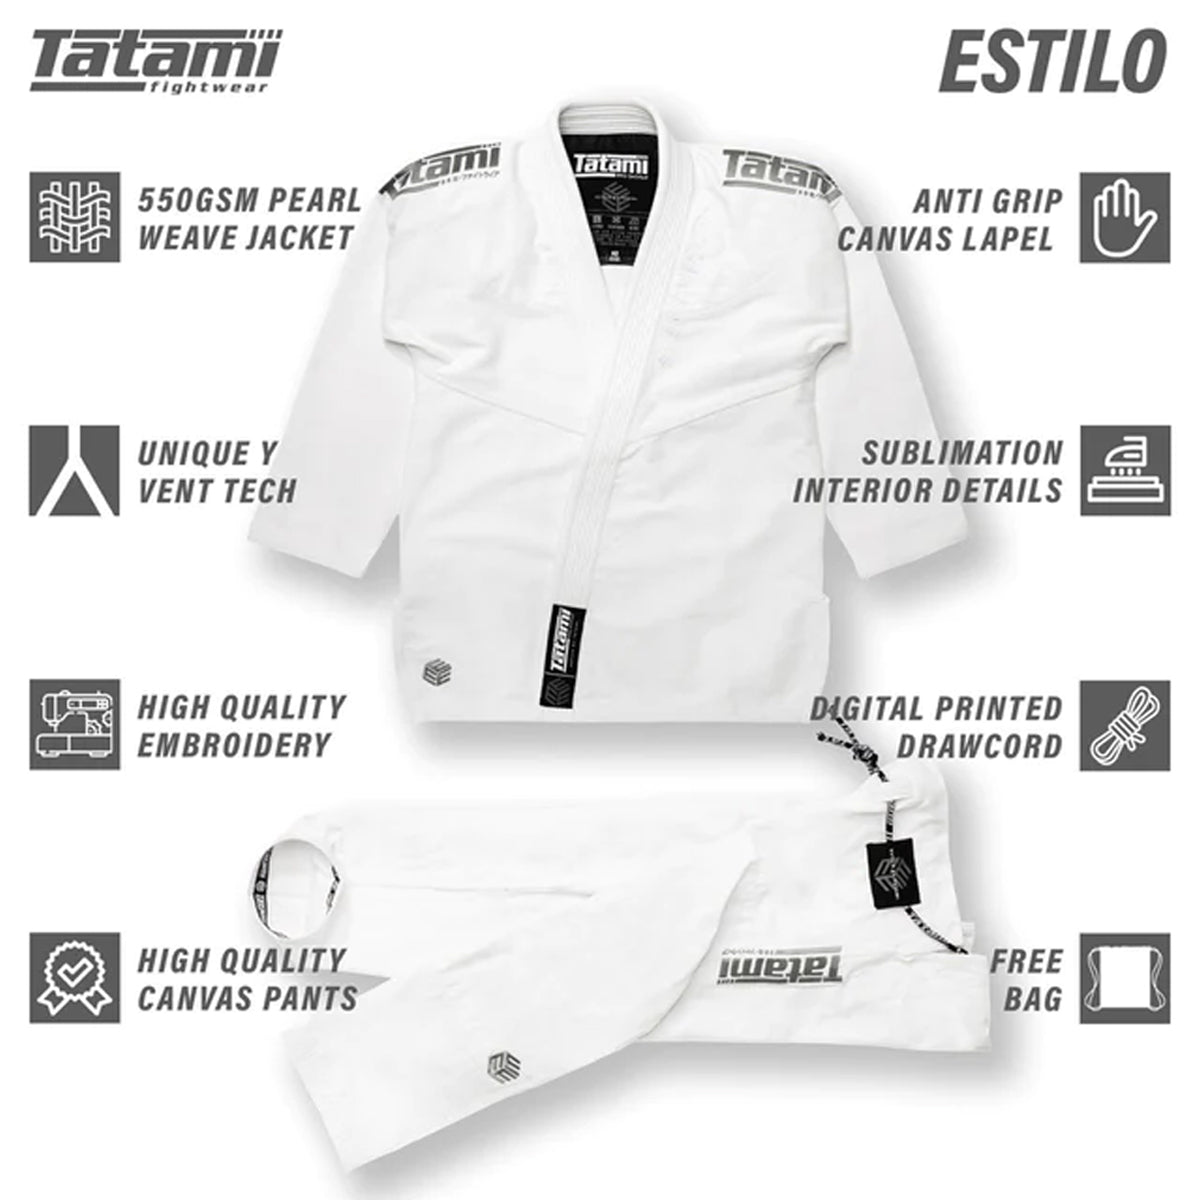 Tatami Fightwear Estilo Black Label BJJ Gi - Gray/White Tatami Fightwear